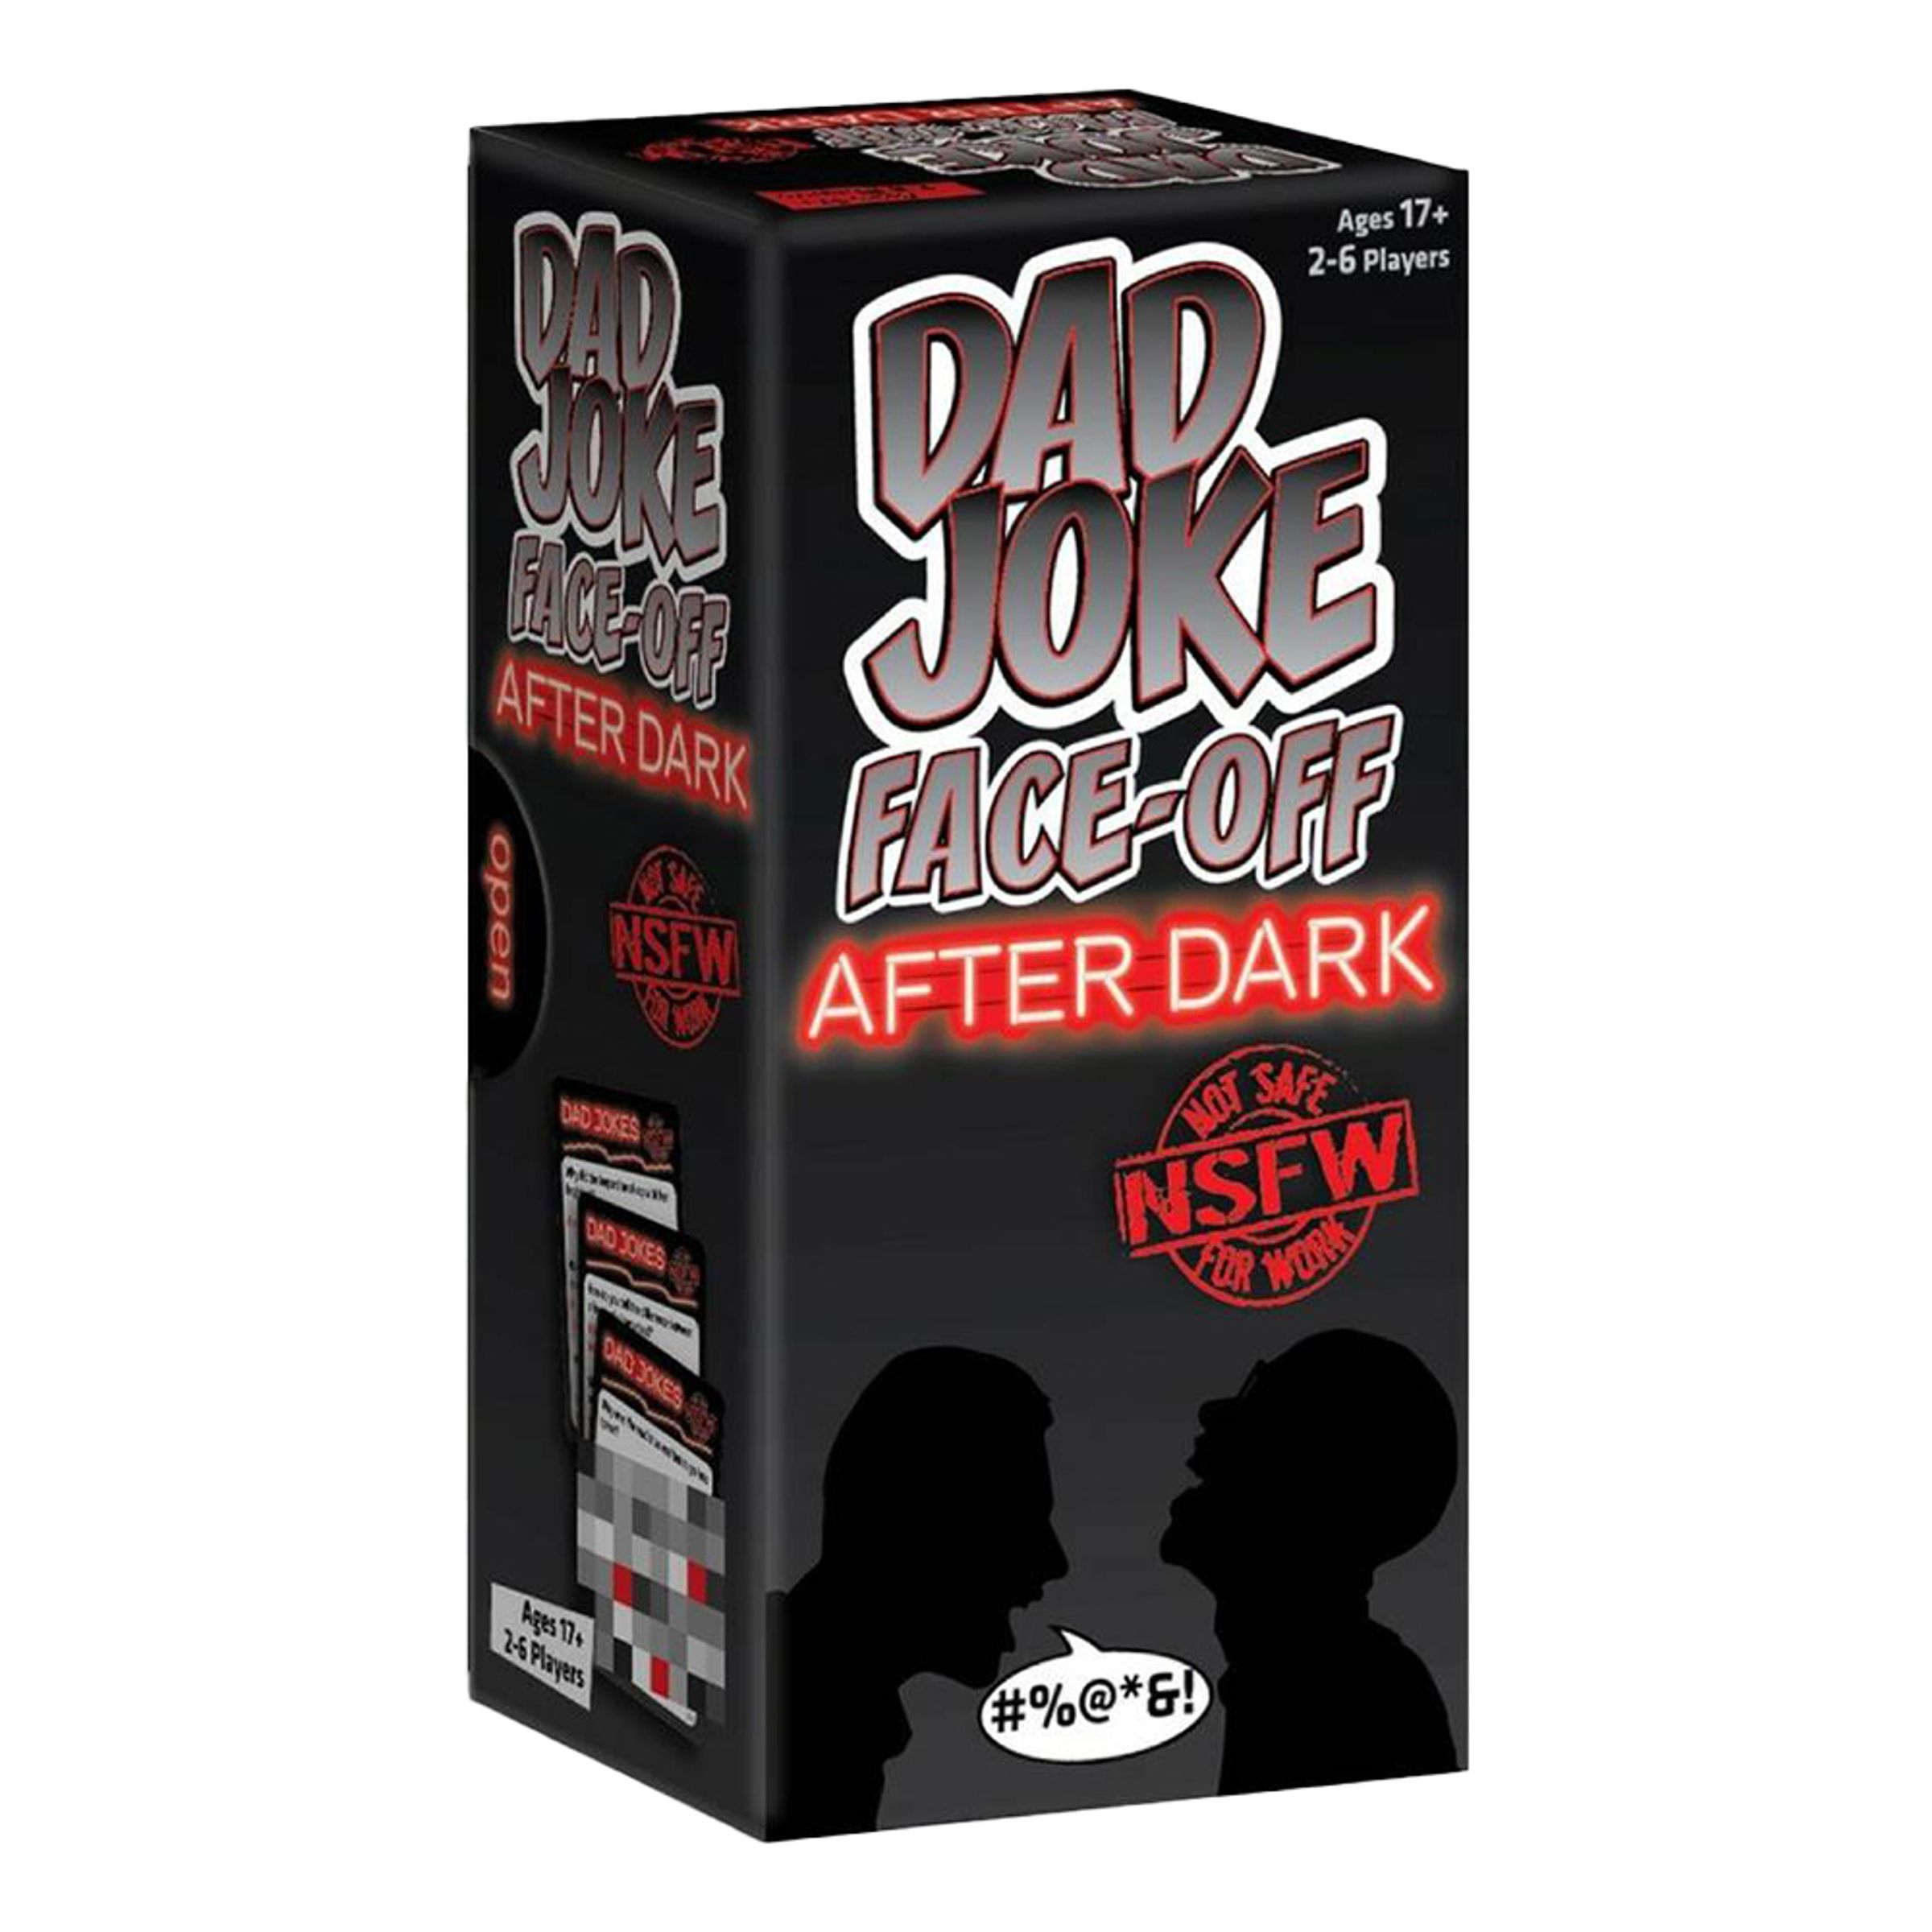 Läs mer om Dad Joke Face Off After Dark